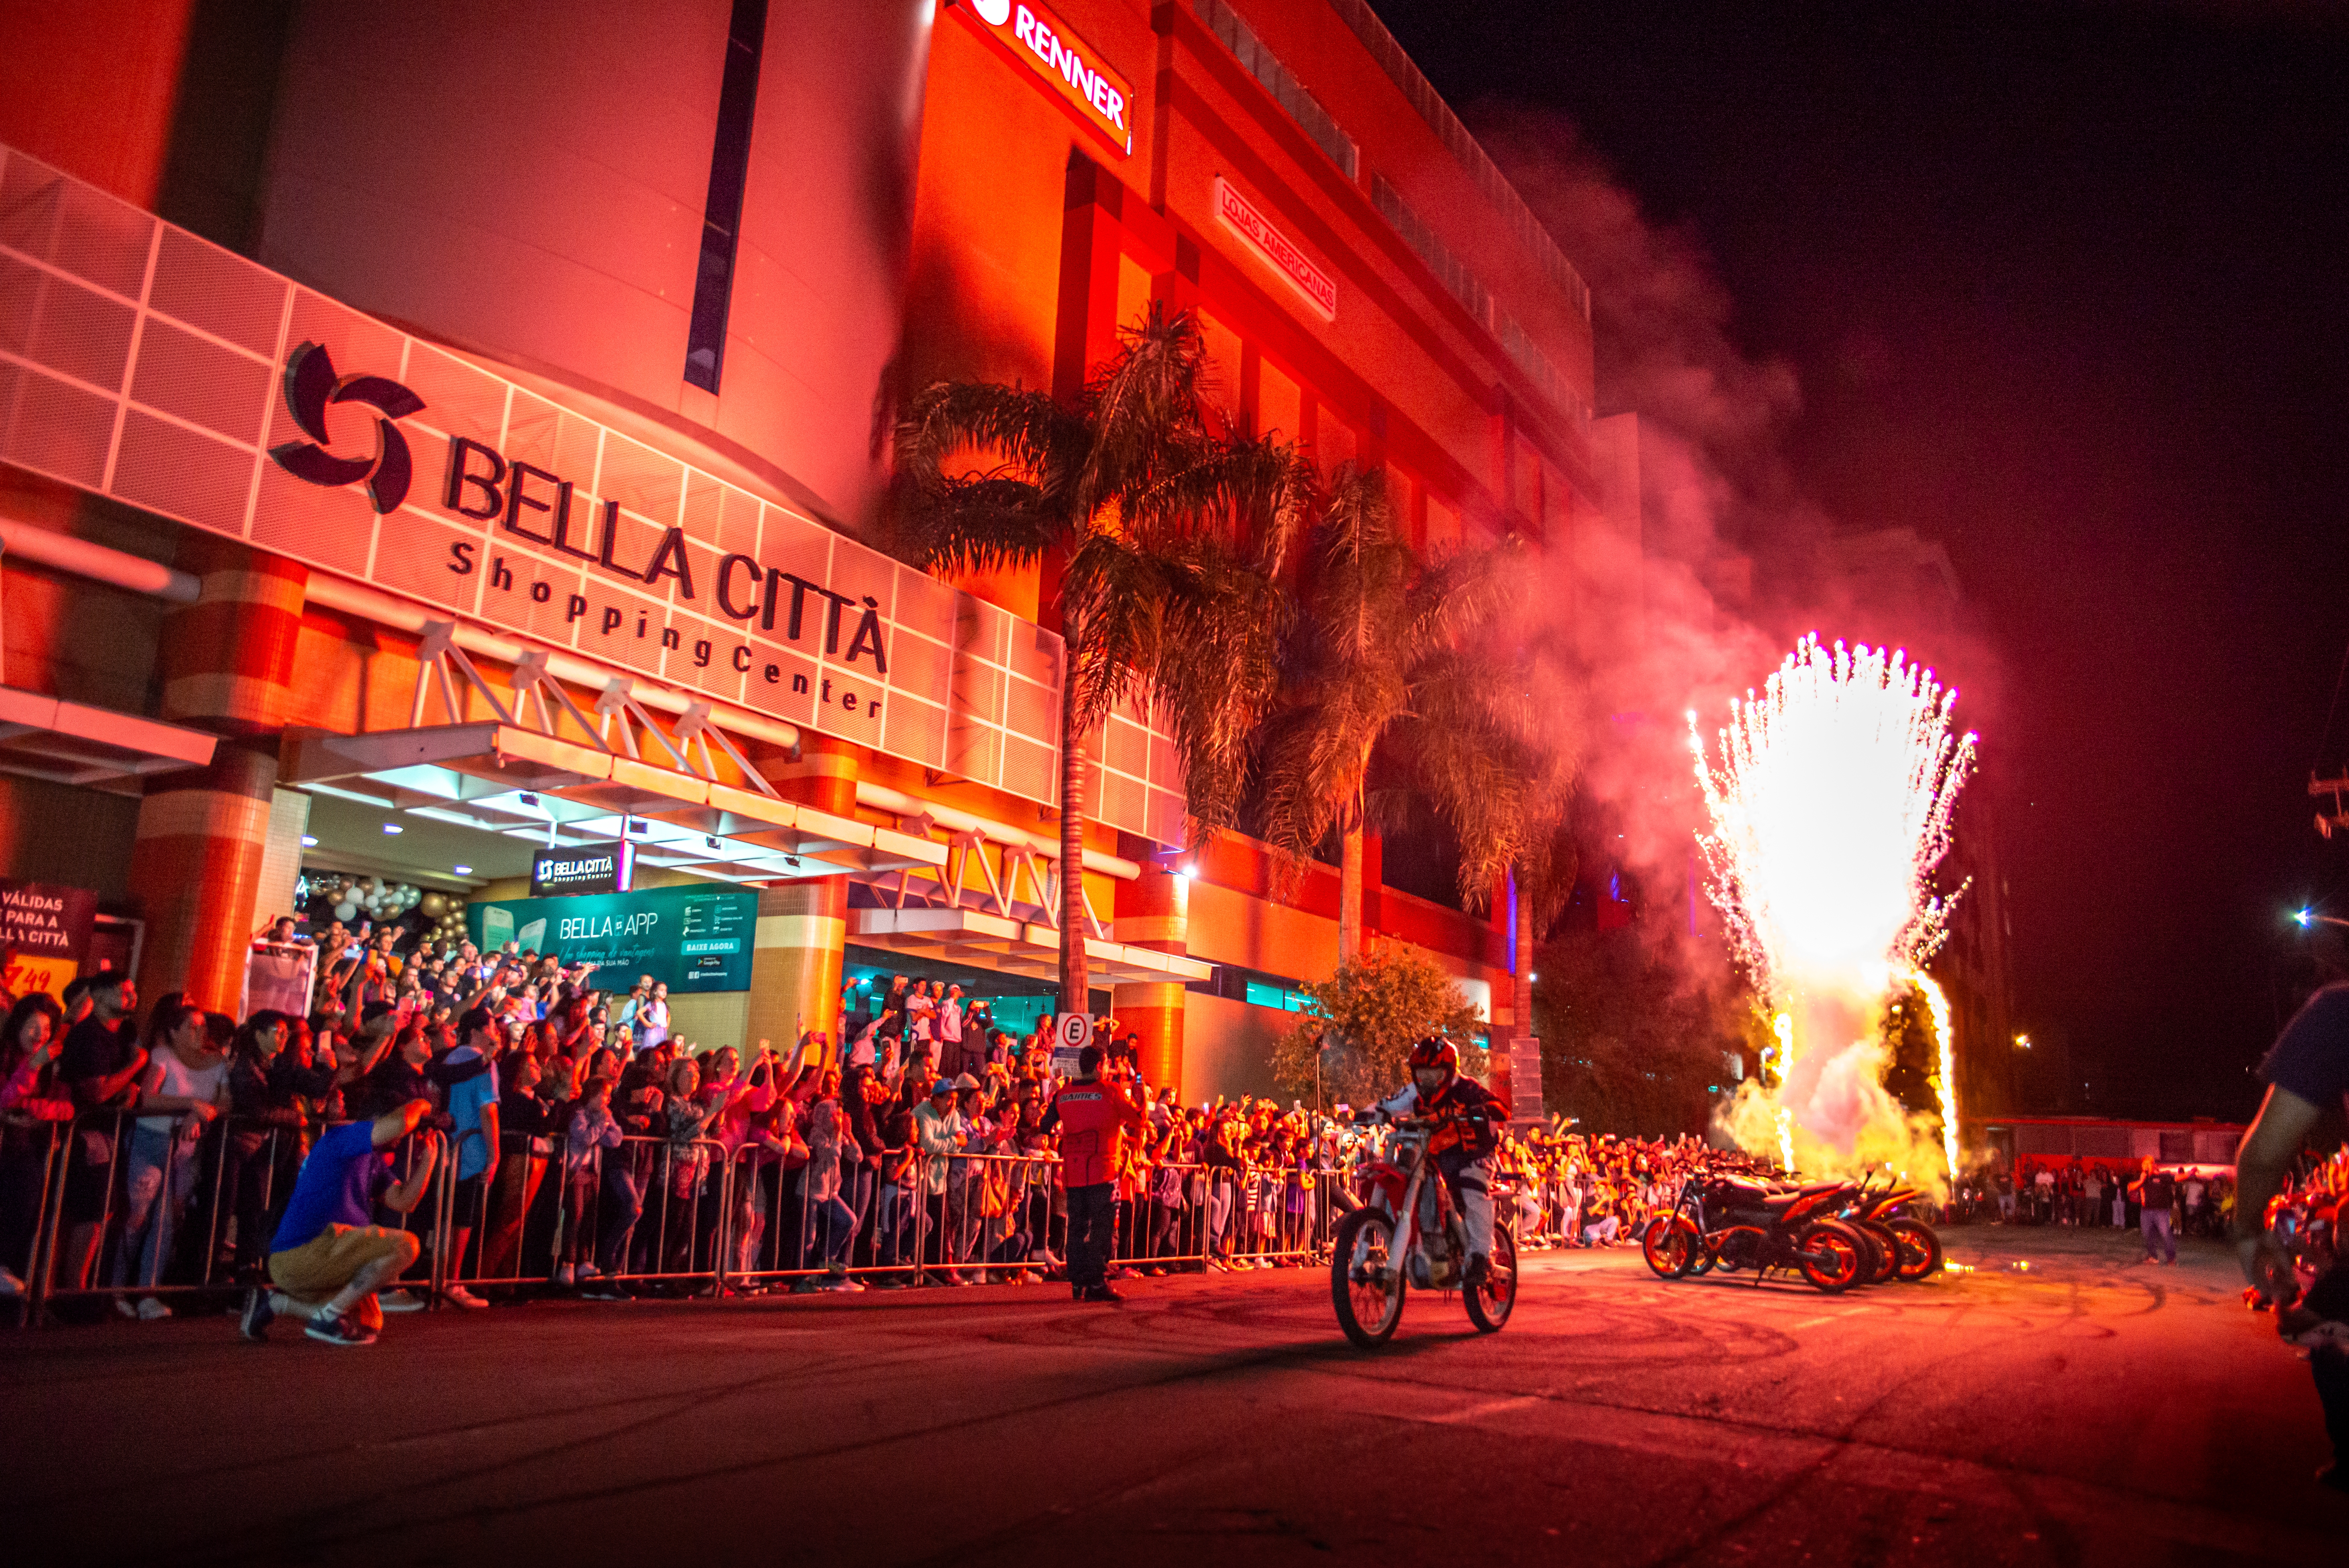 Aniversário do Bella Città Shopping reúne cerca de 20 mil pessoas